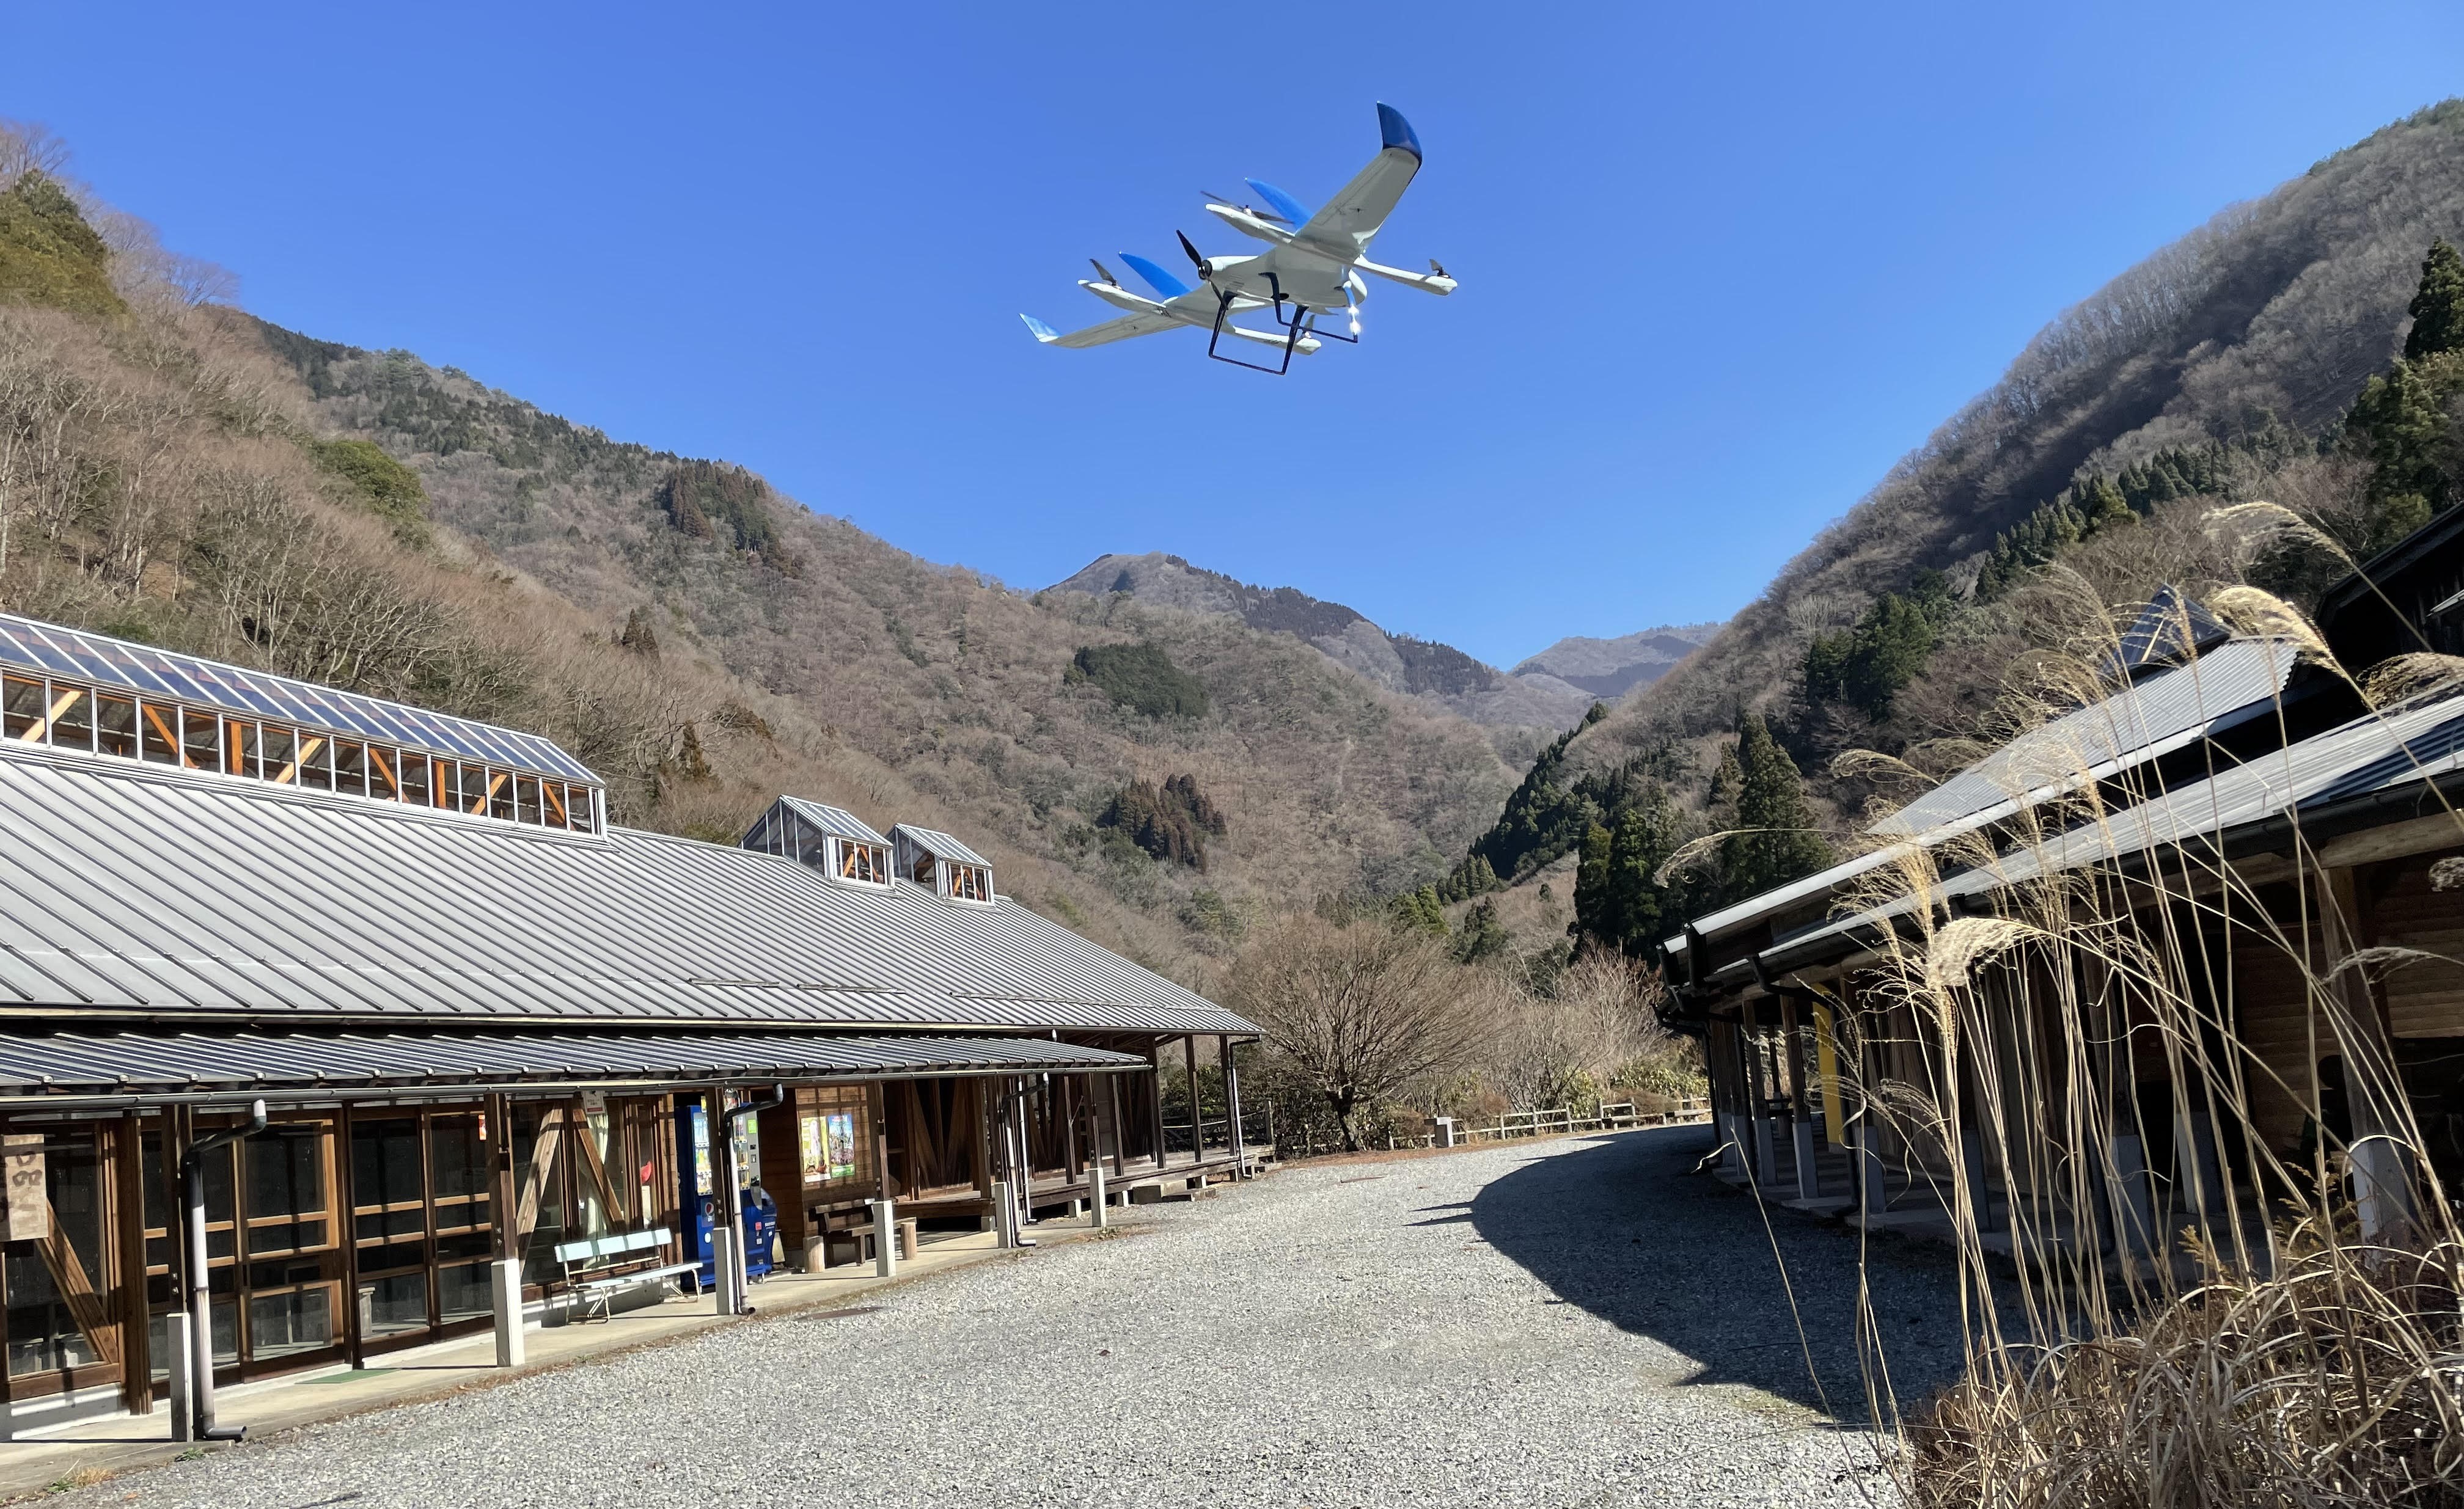 エアロセンス、VTOL型ドローンを活用し、熊本県久連子川で 砂防施設点検の効率化等を目的に飛行試験を実施